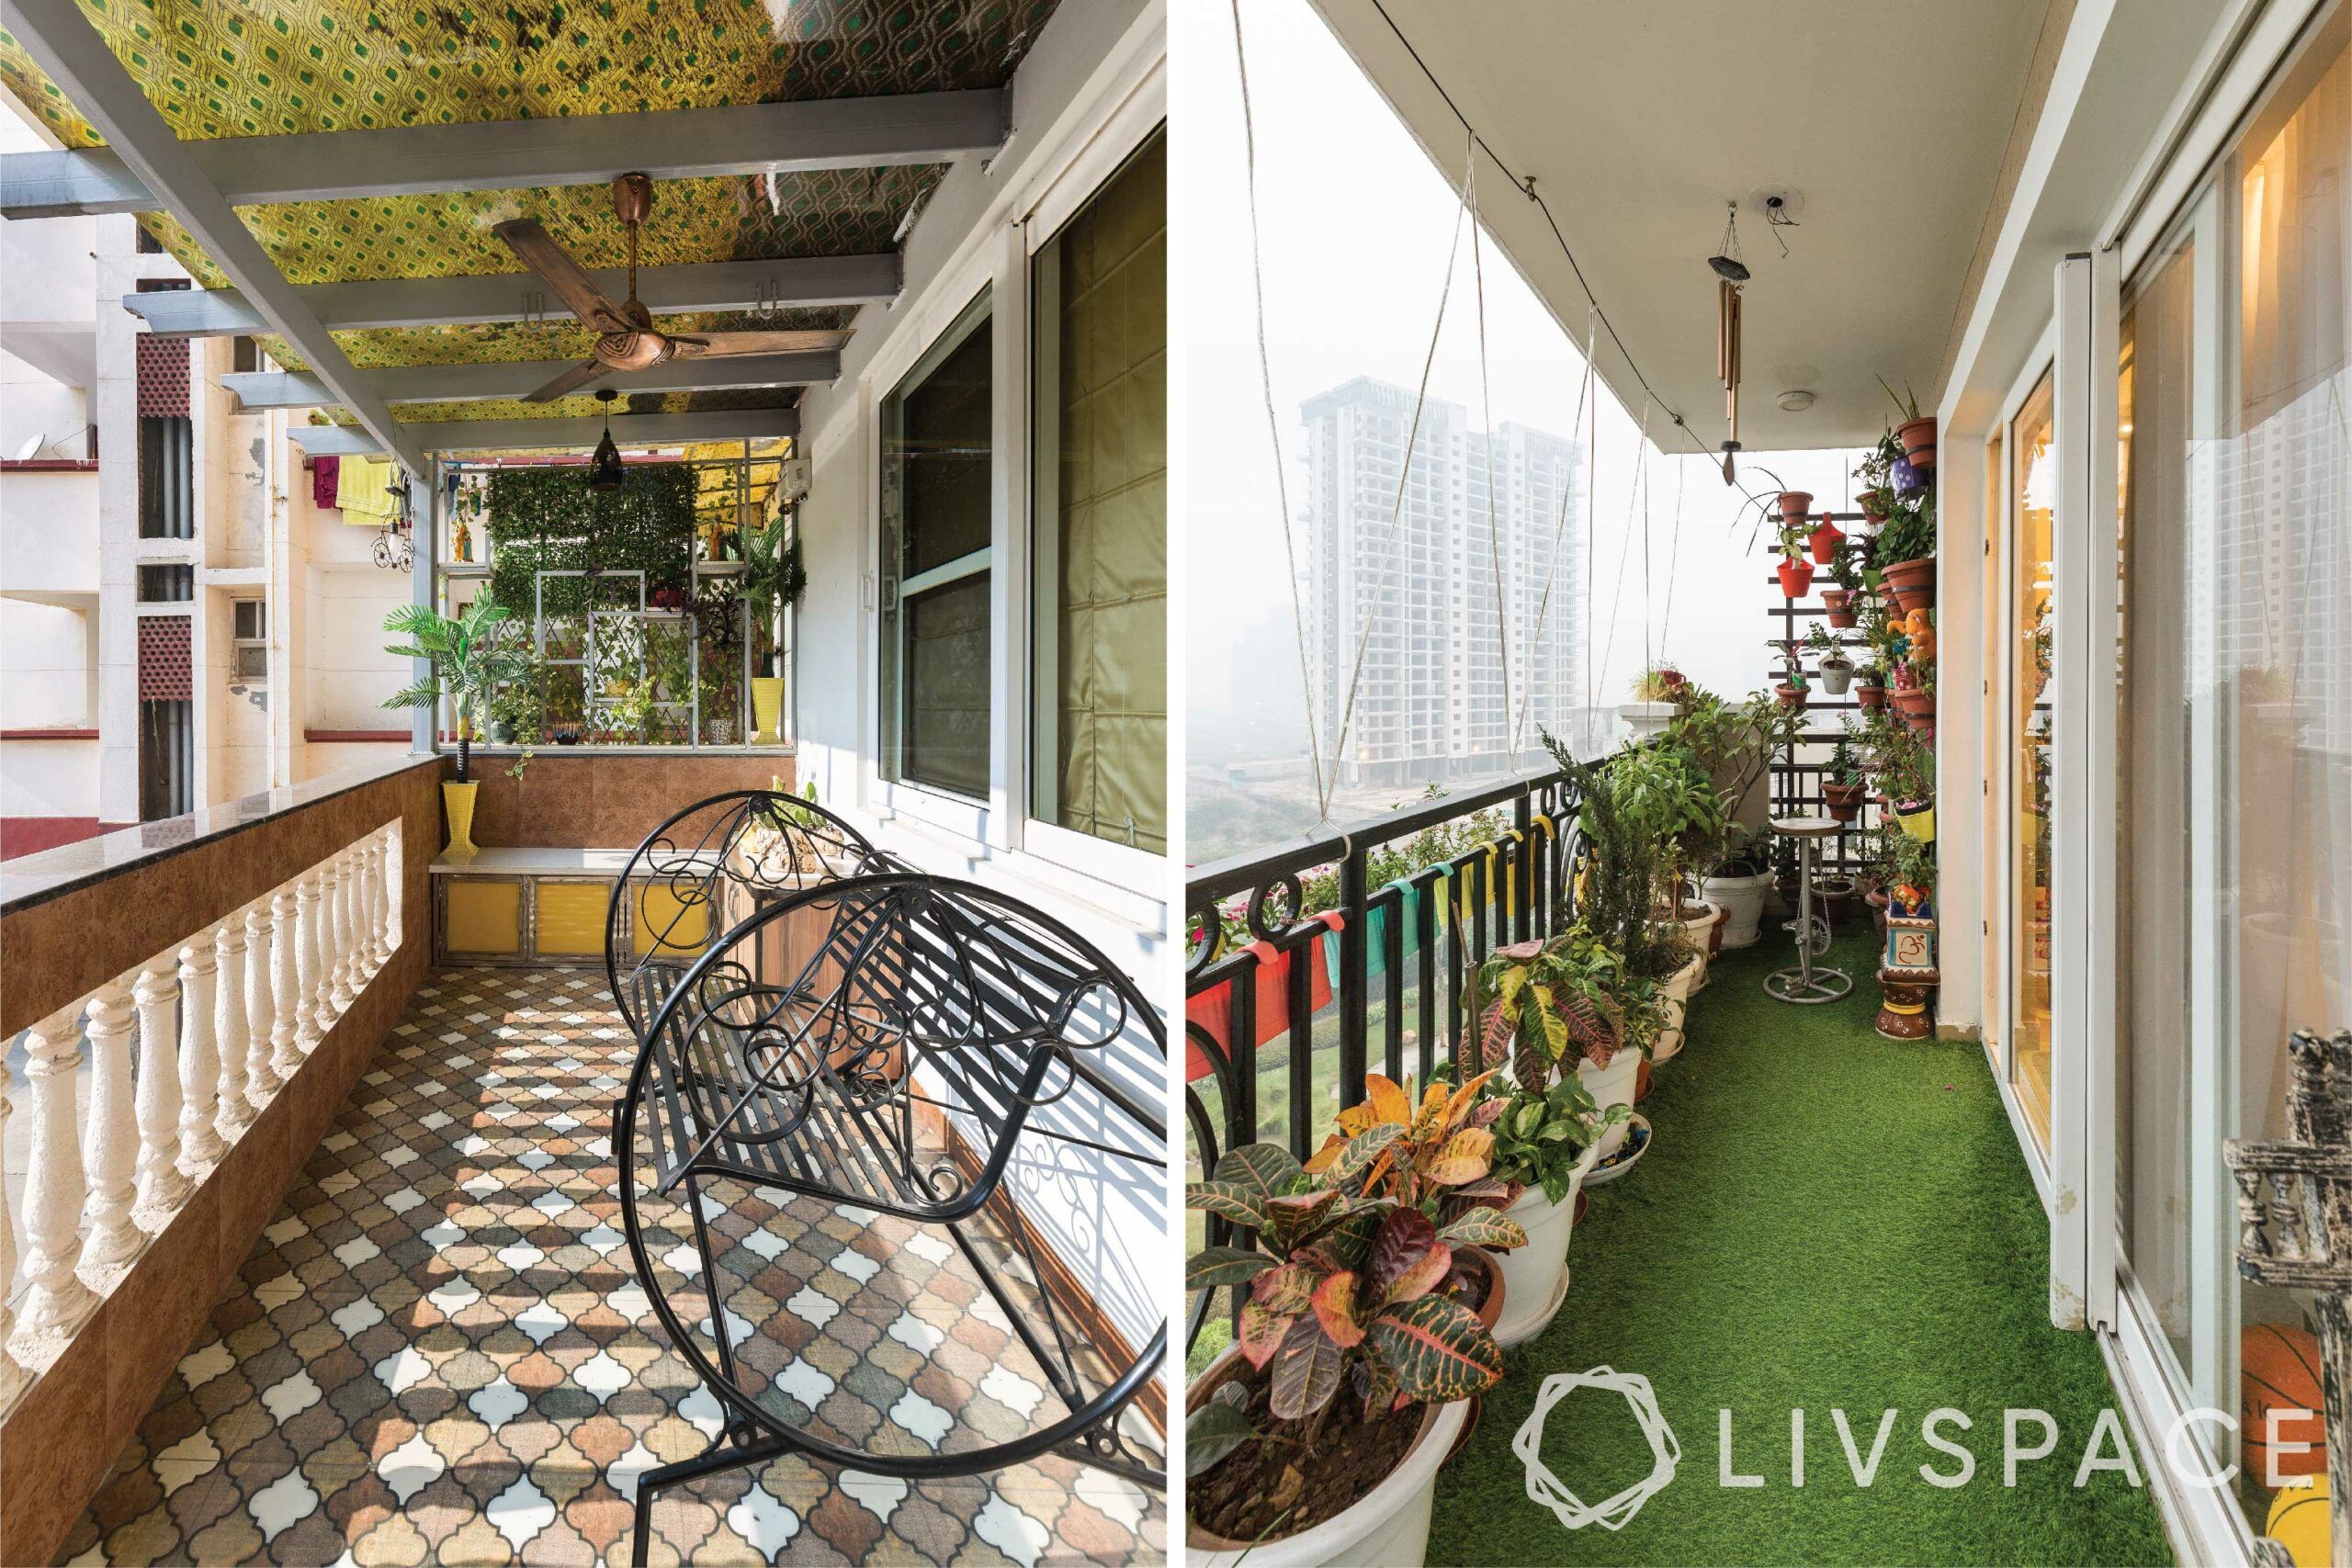 house-balcony-design-moroccan-tiles-artificial-turf-iron-bench-planters
